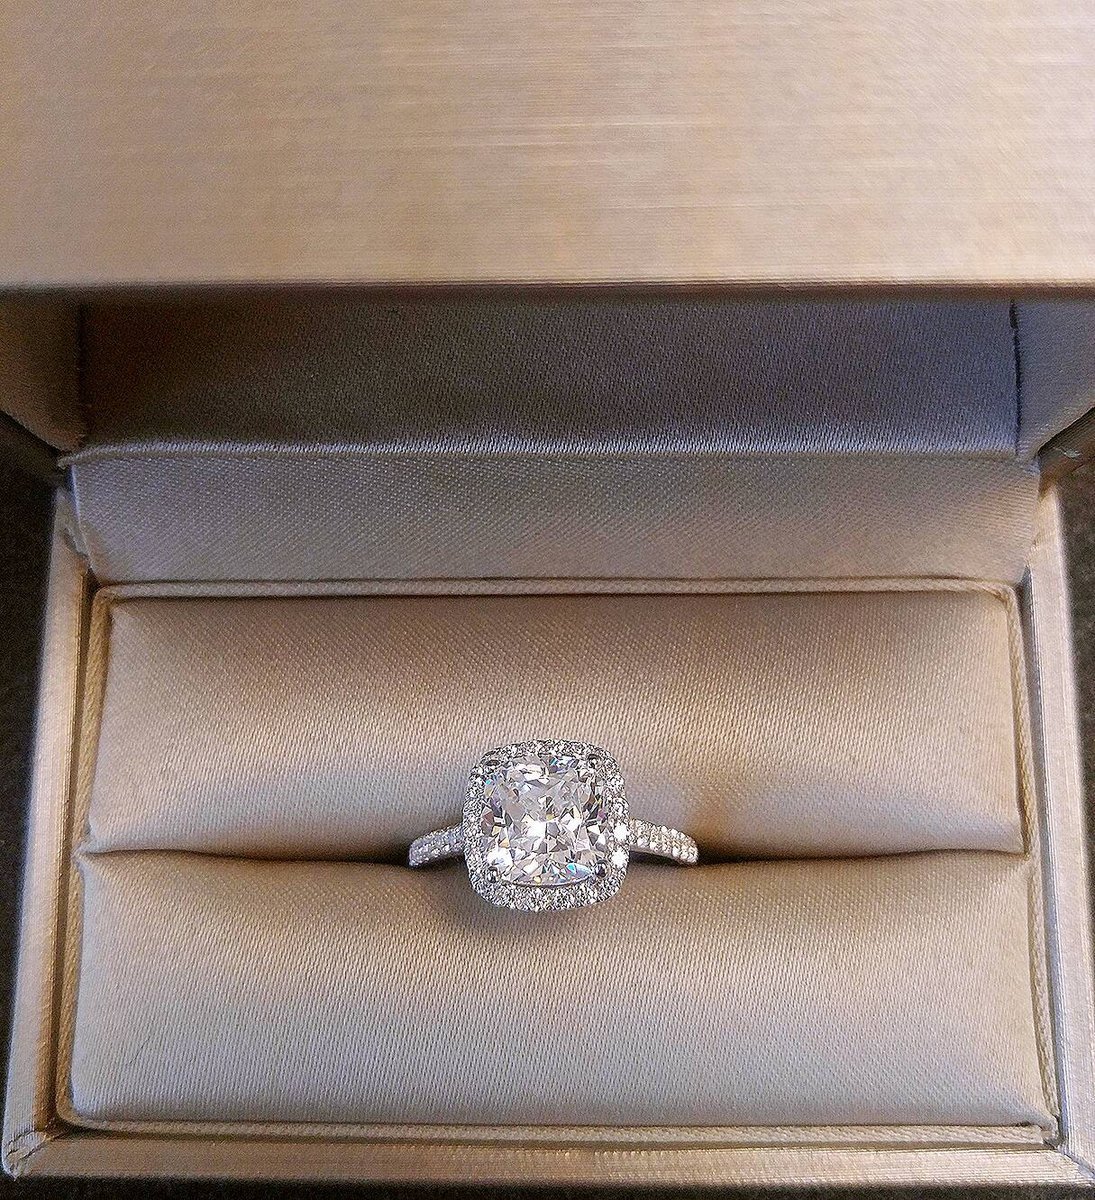 Обручальное кольцо с бриллиантом в коробочке